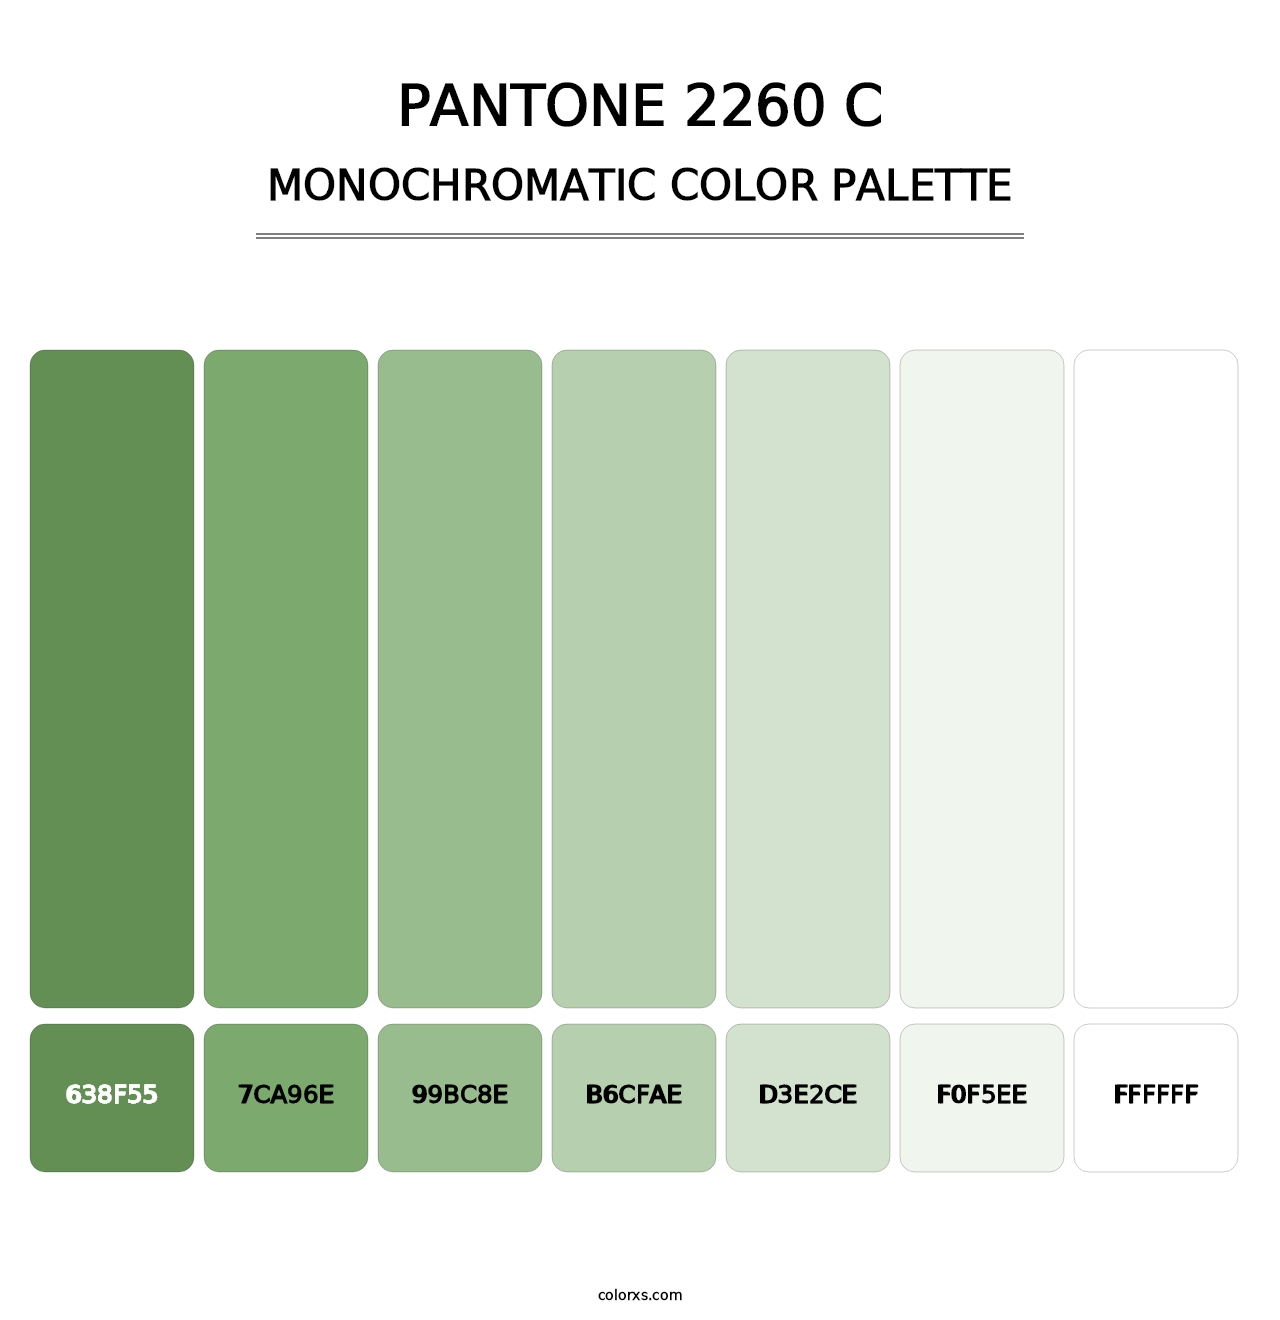 PANTONE 2260 C - Monochromatic Color Palette